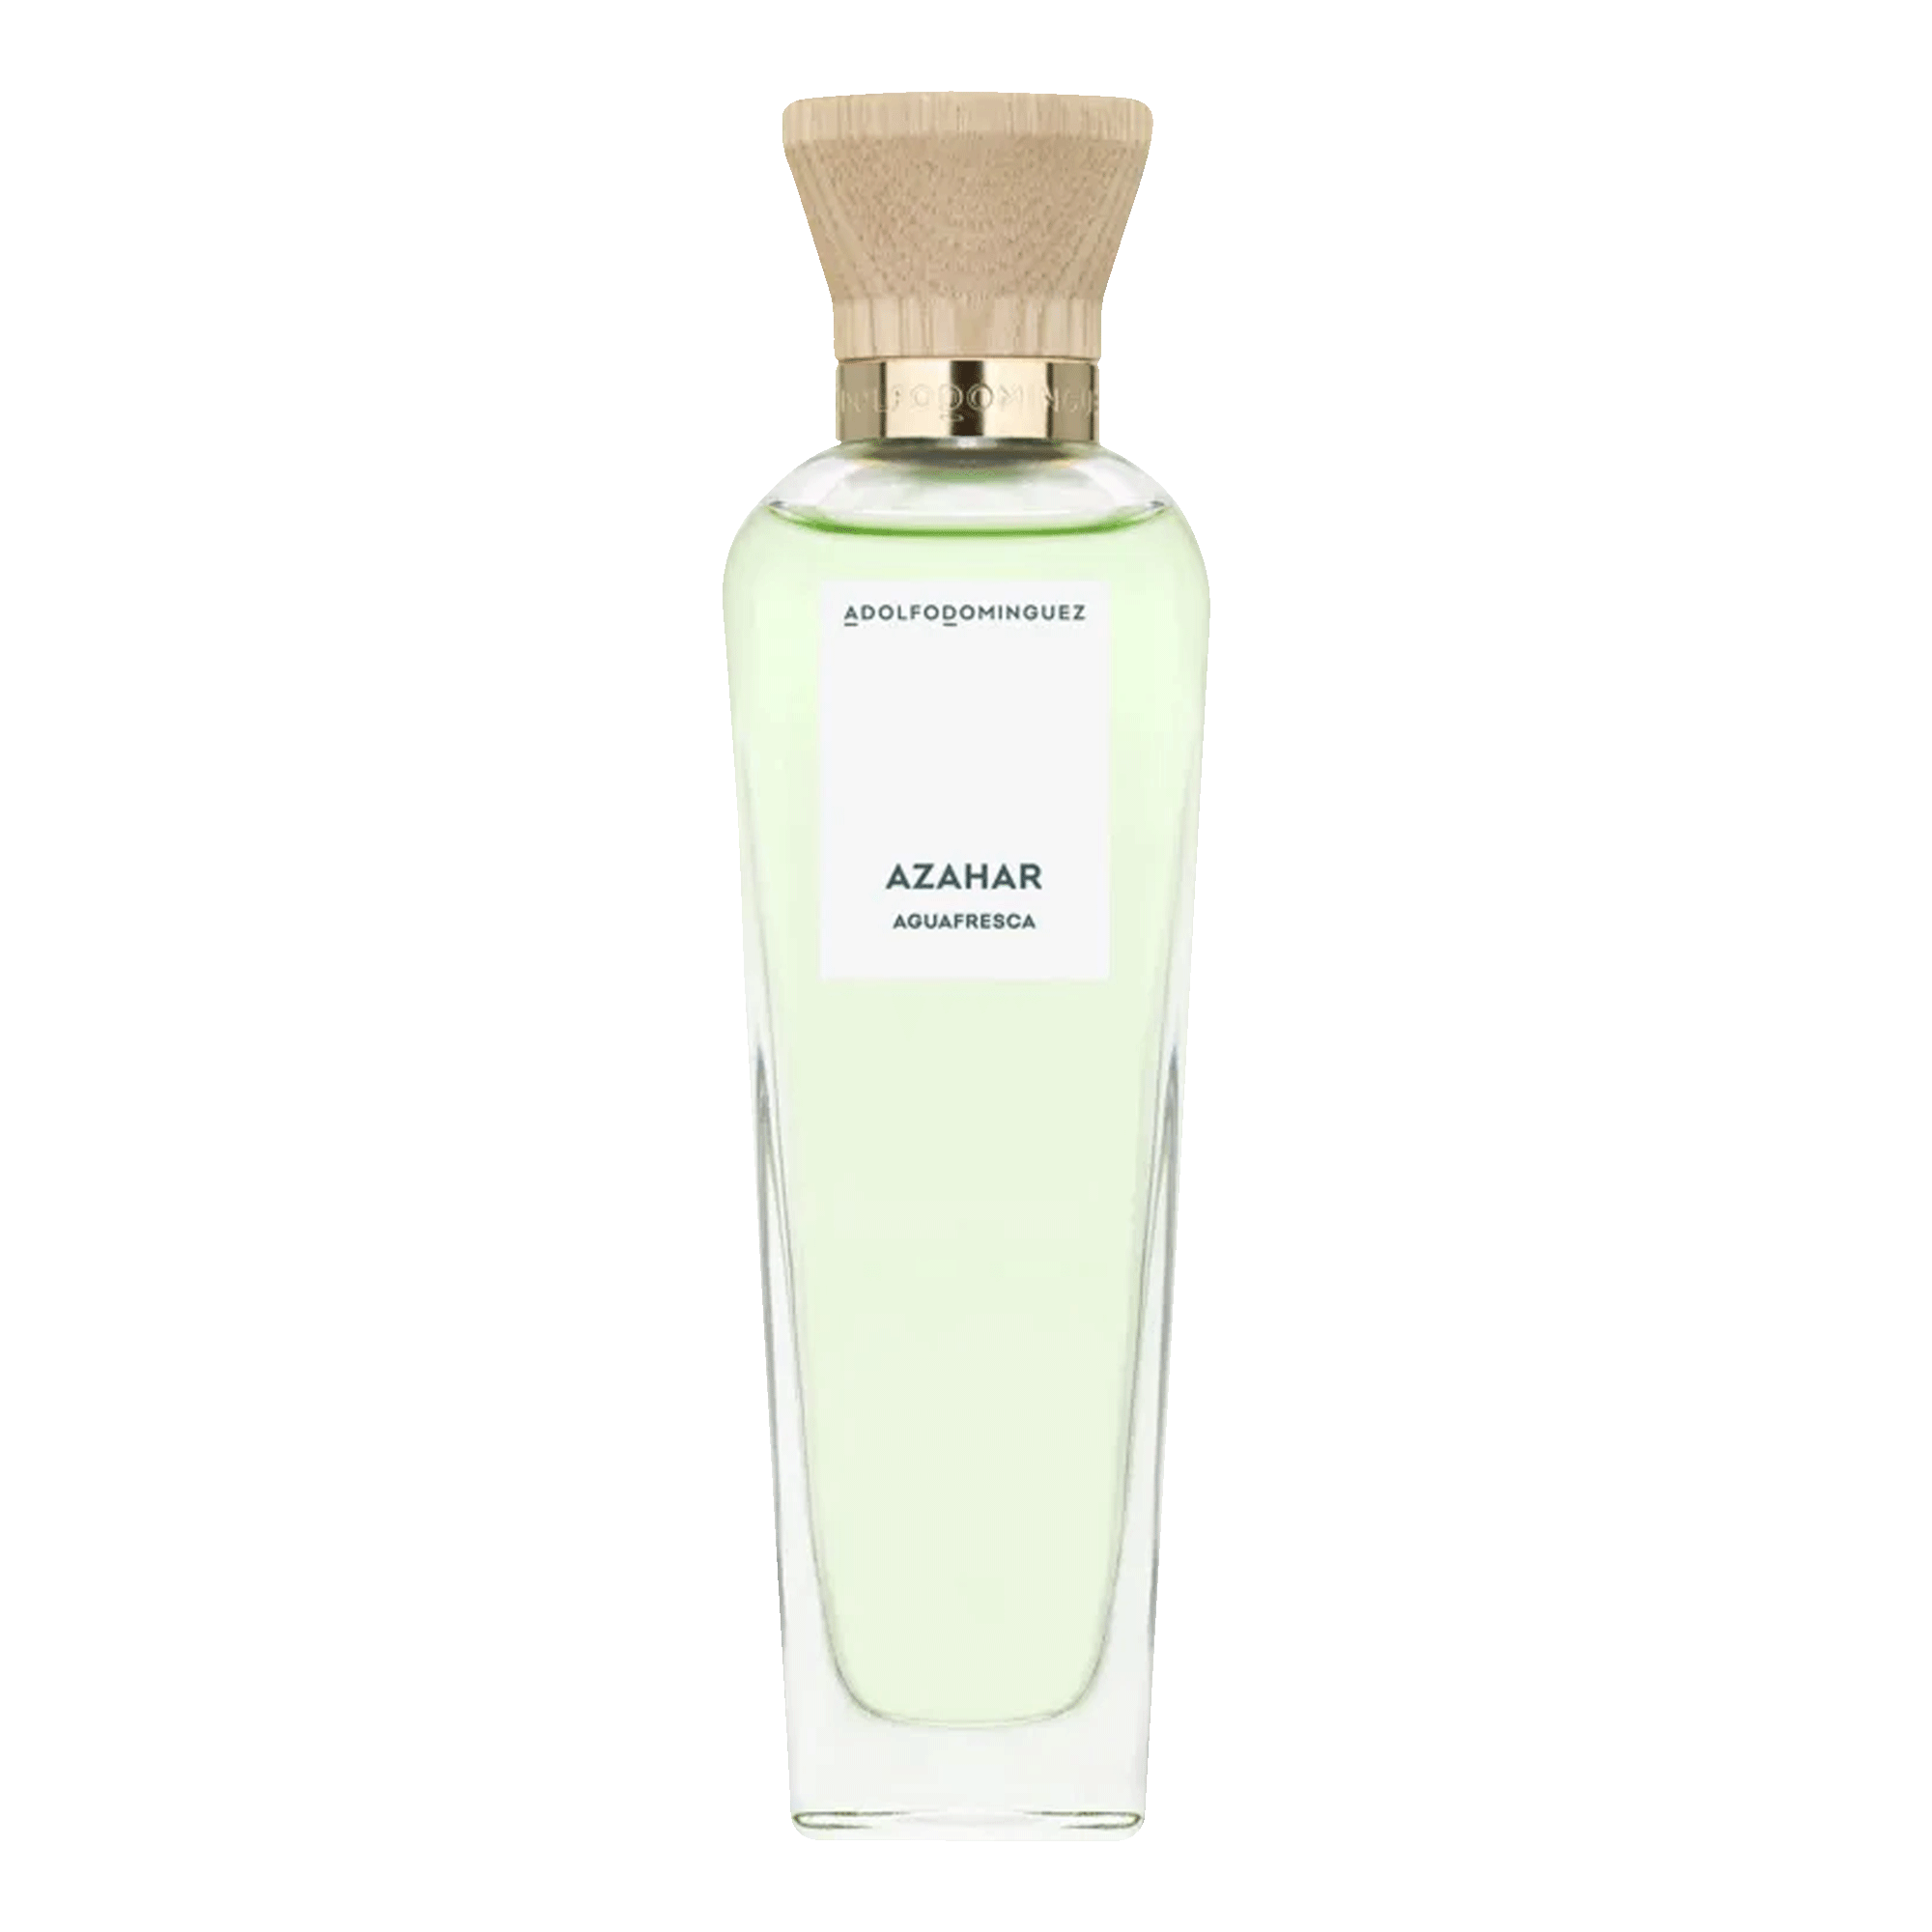 Agua Fresca De Azahar Adolfo Dominguez Eau De Toilette - Perfume Feminino 120ml